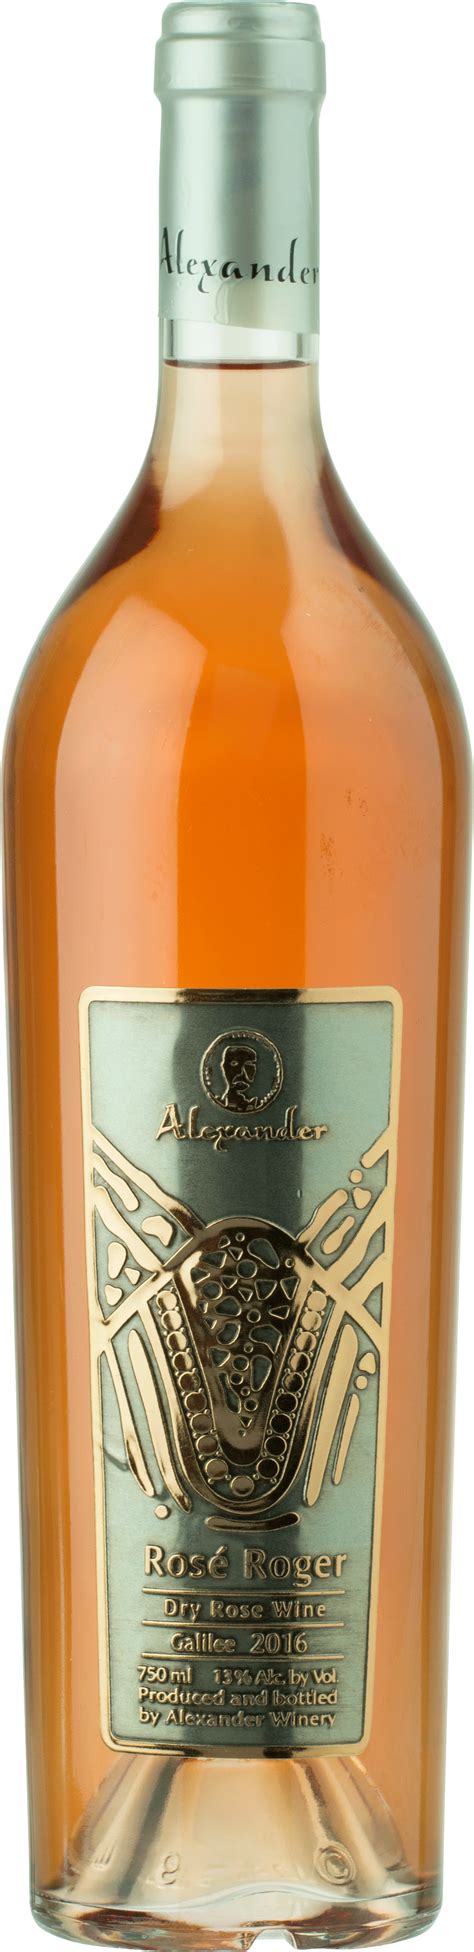 Download Alexander- Rose Roger 750ml - Glass Bottle - Full Size PNG Image - PNGkit